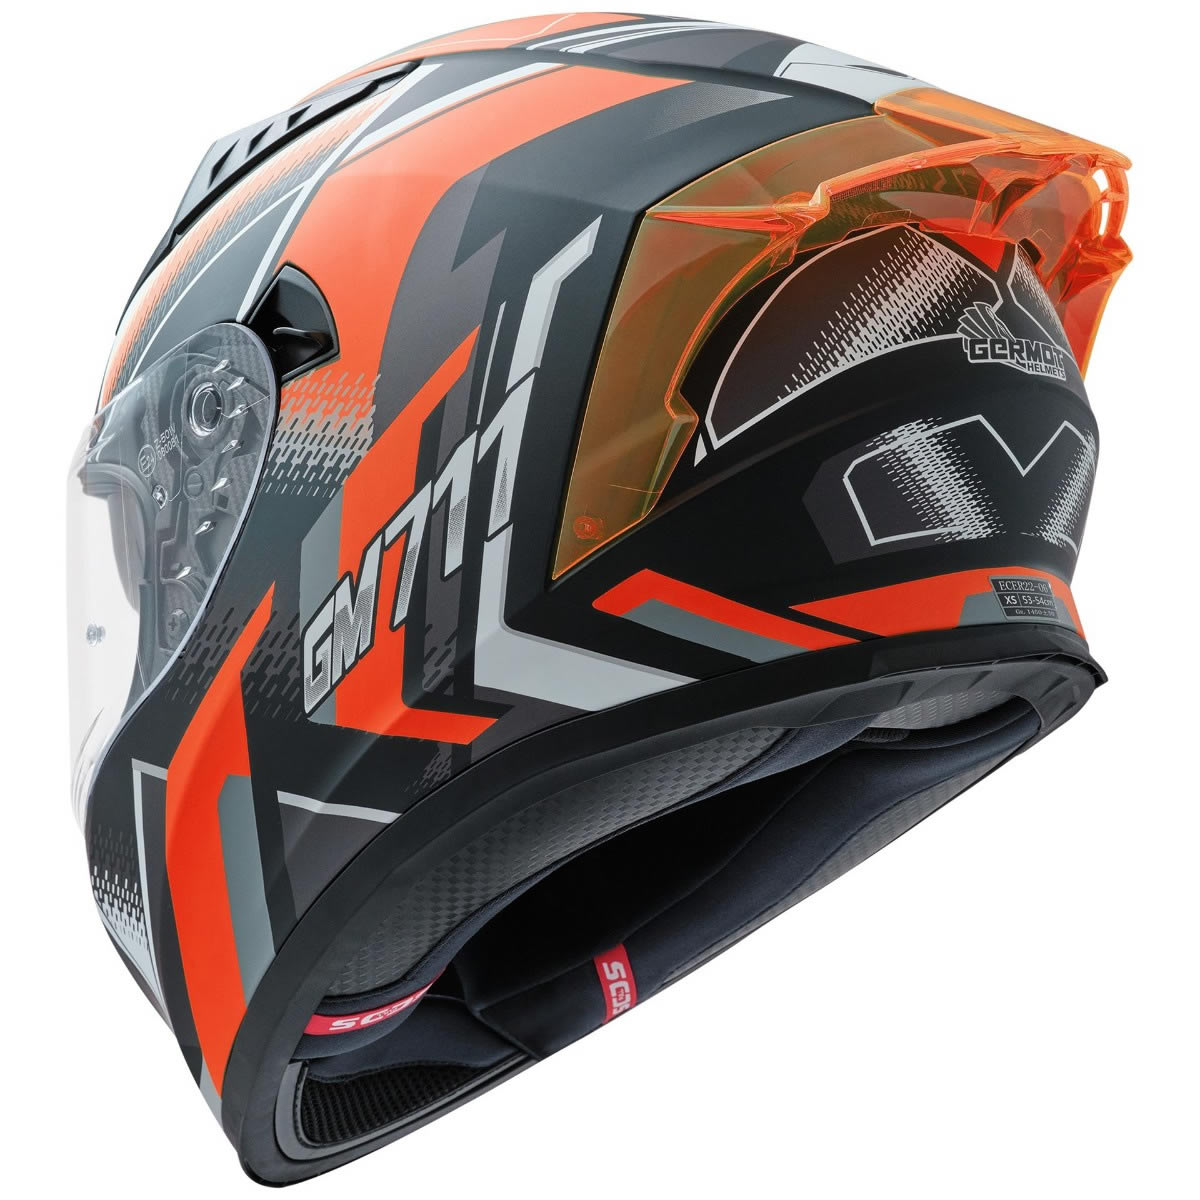 Germot GM 711 Helm, schwarz-orange matt